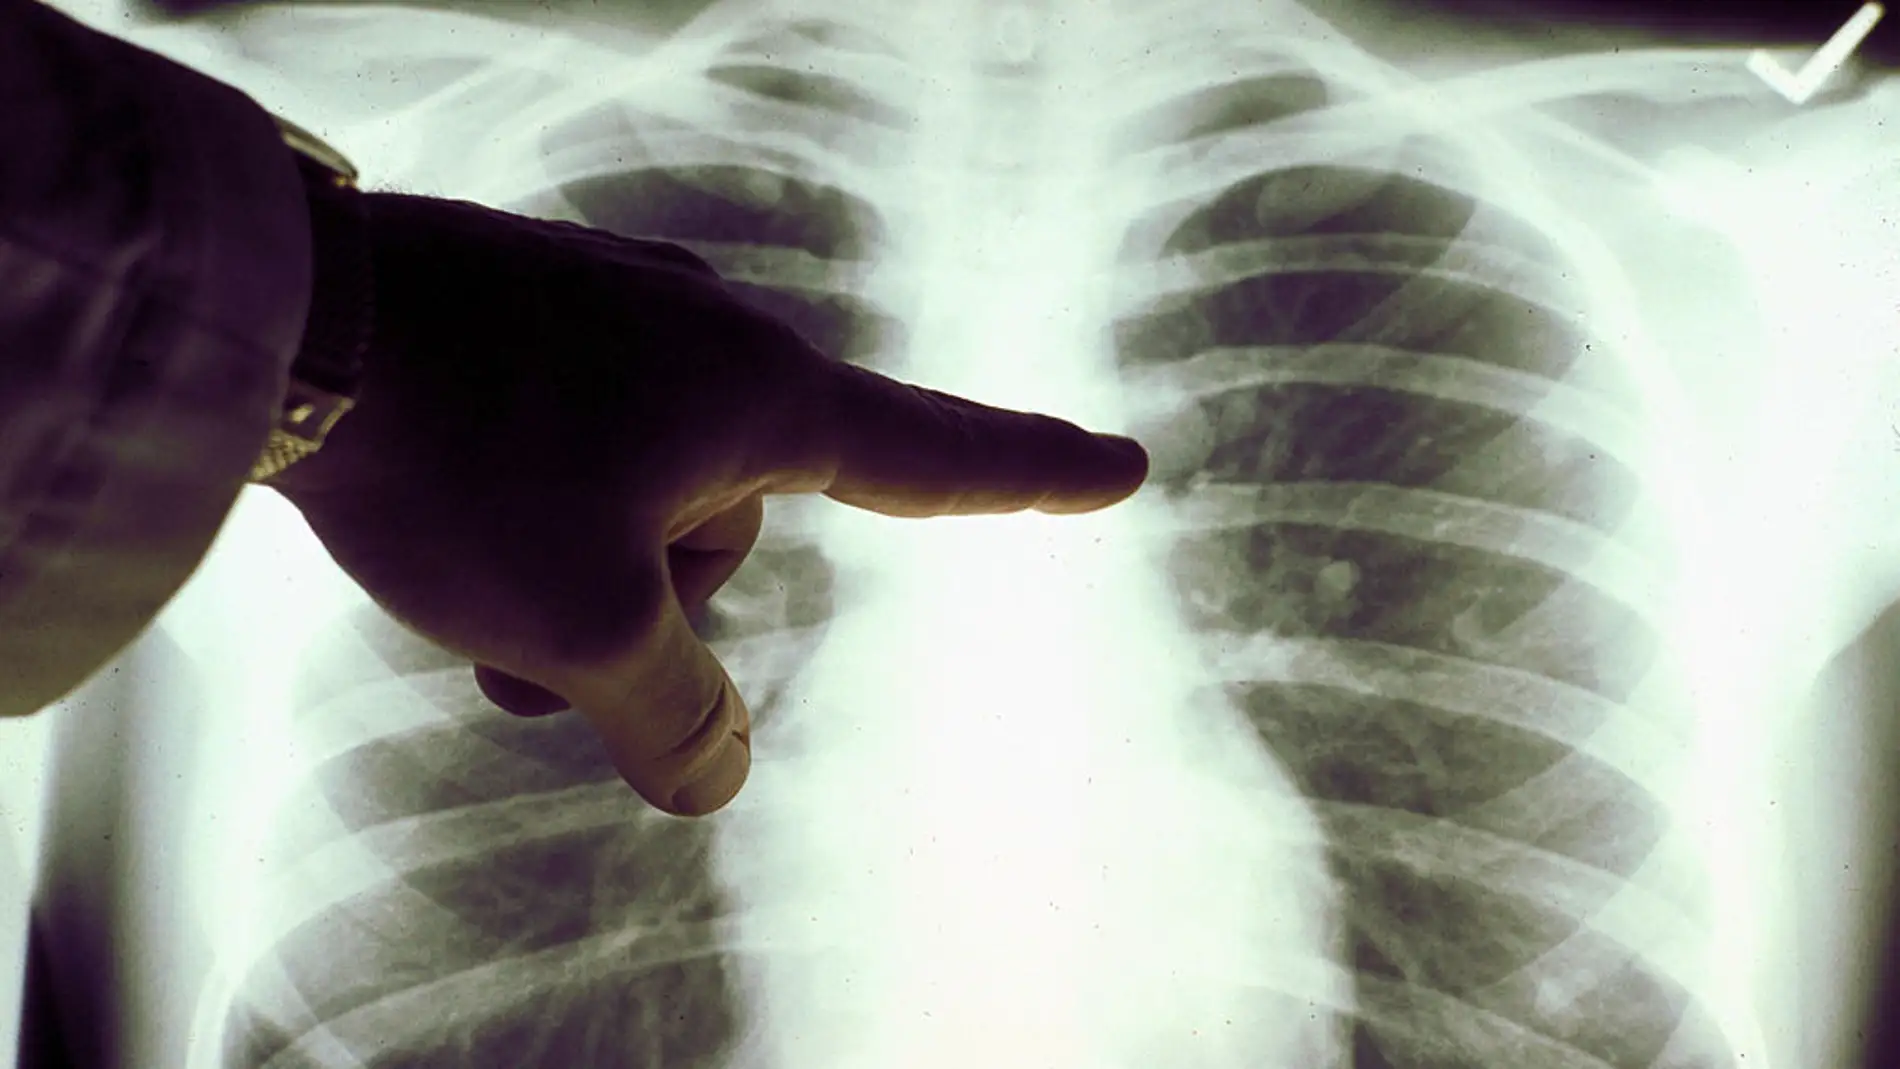 Radiografía de los pulmones